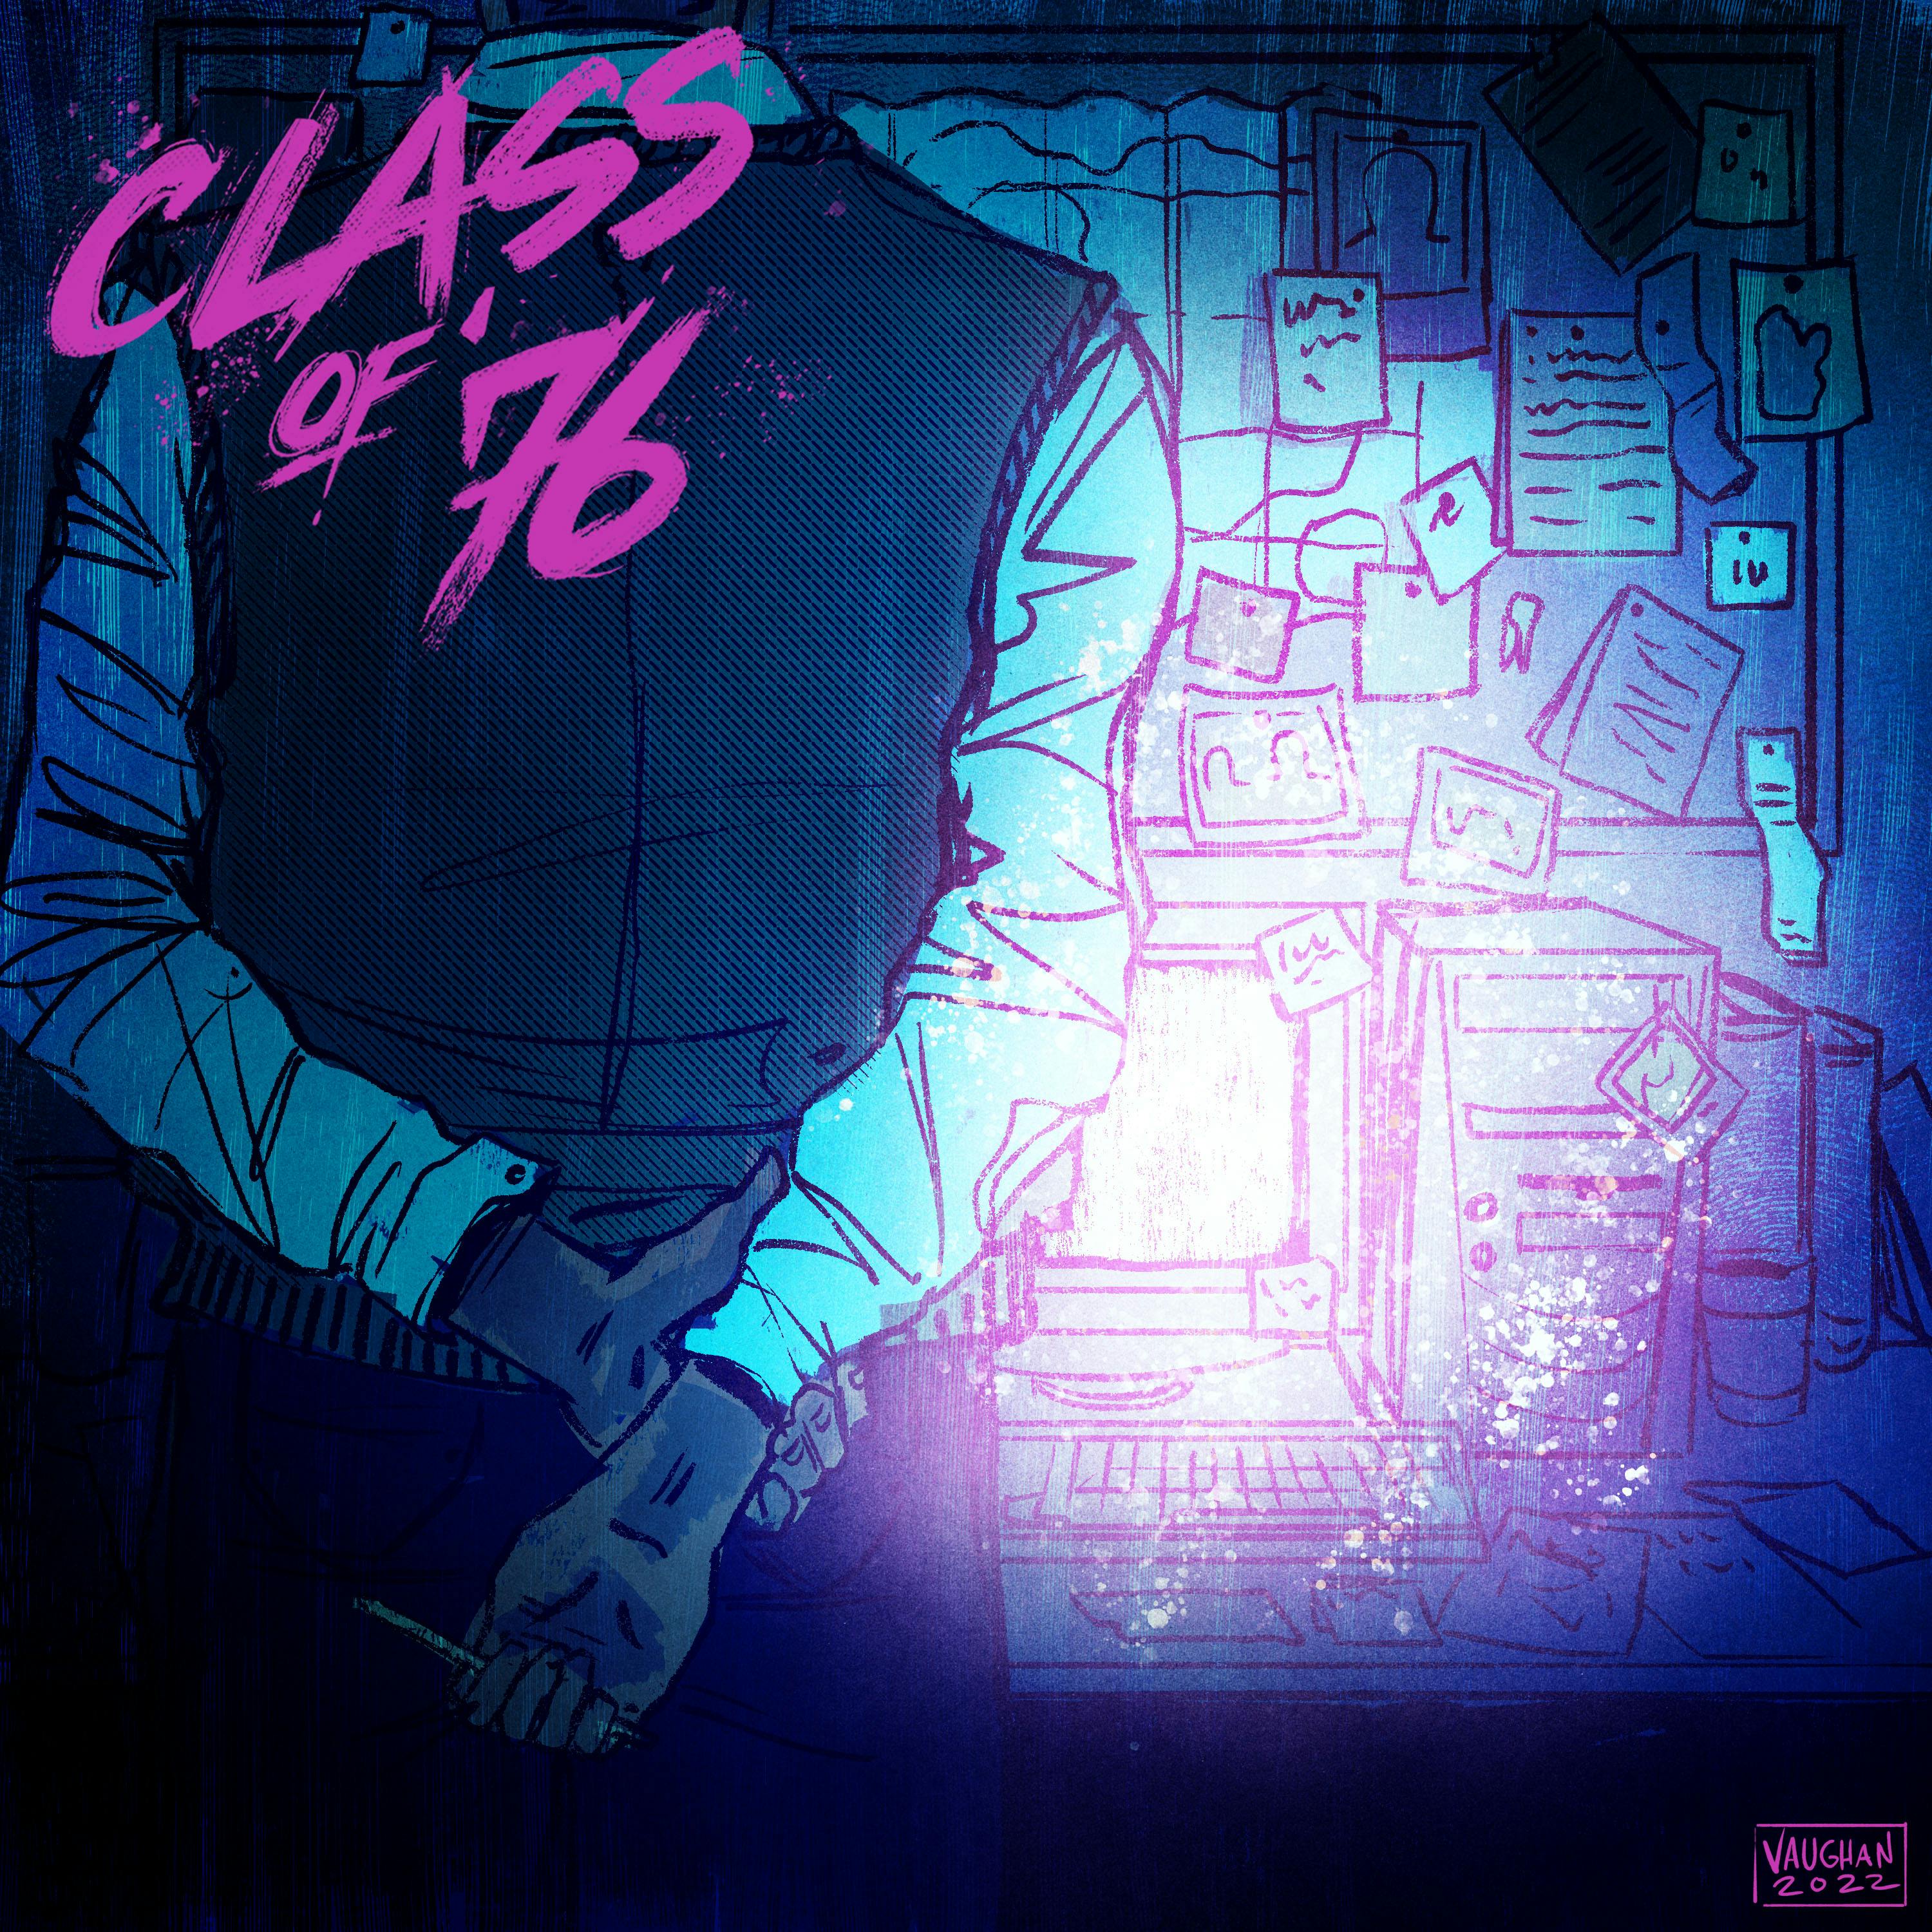 Class of ’76 - Part Eight